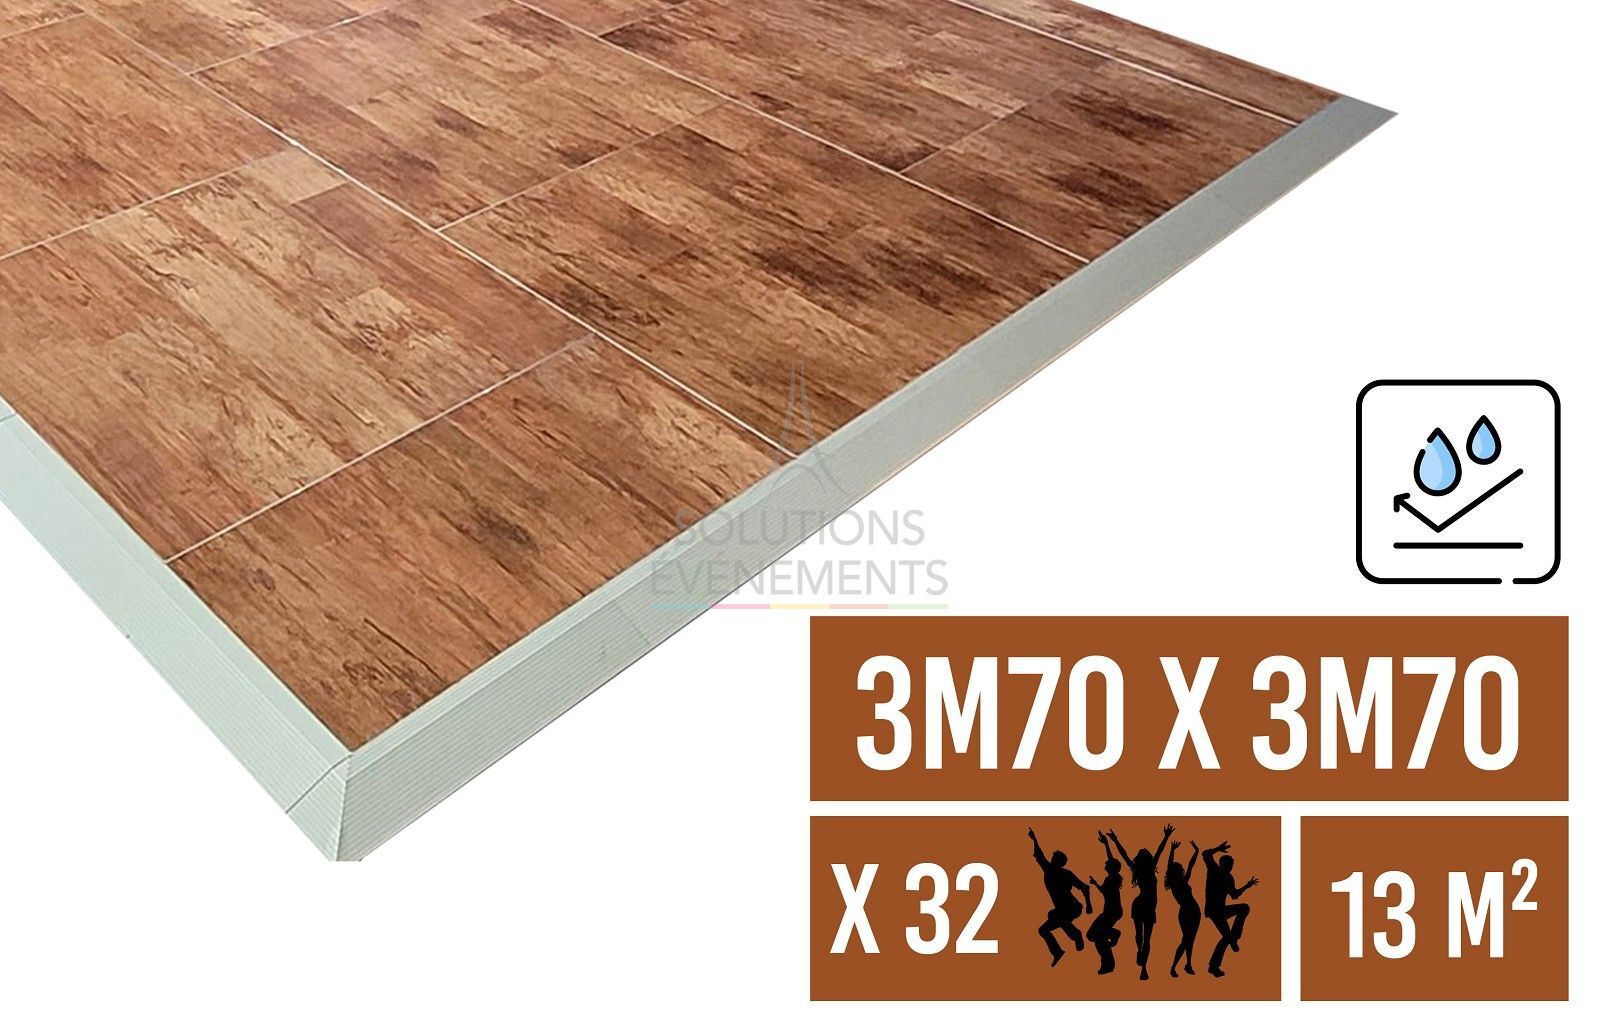 Rental of ballroom floor and parquet dance floor of 3.70 x 3.70 m